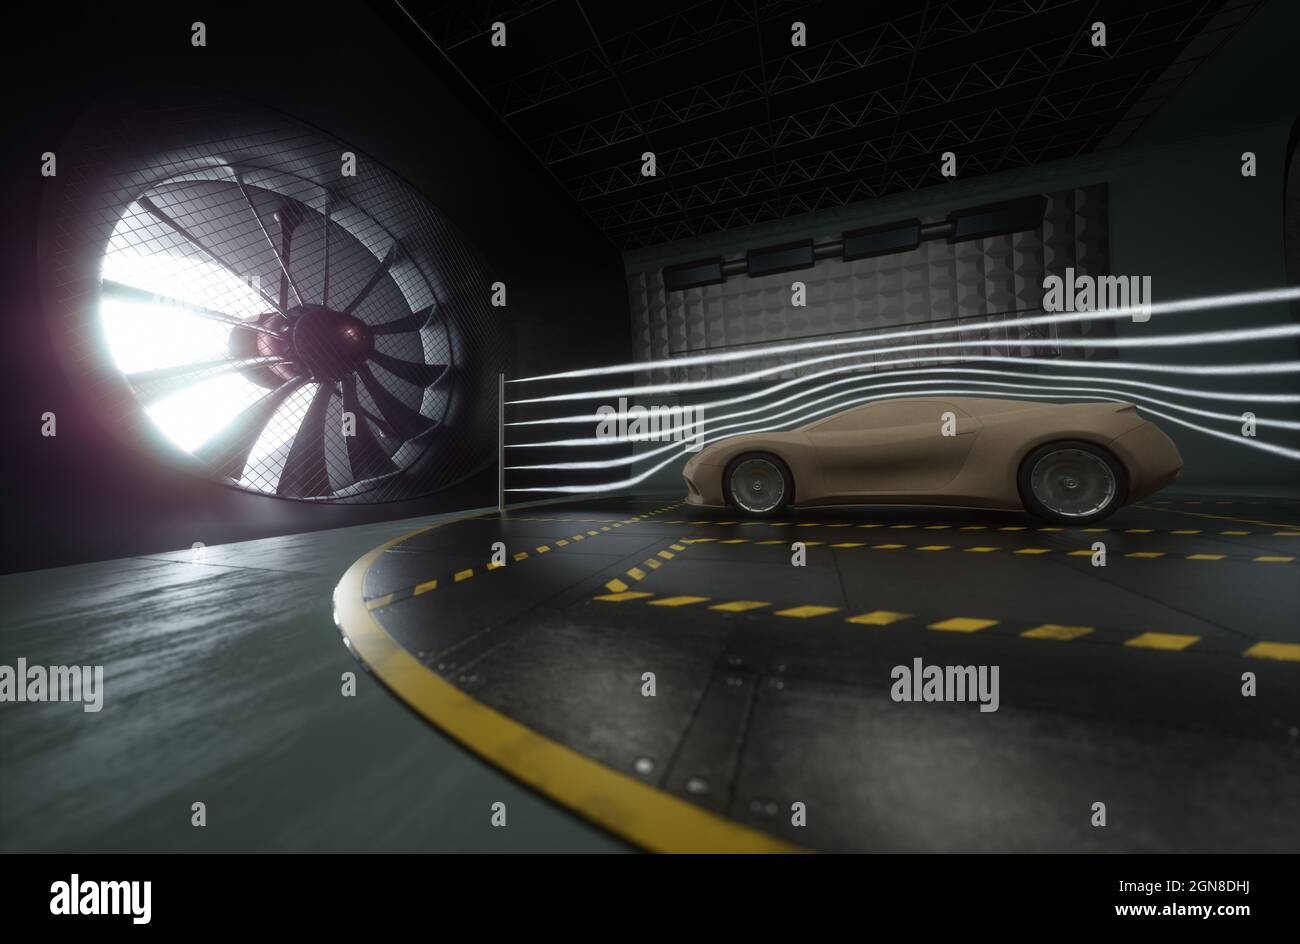 Illustration 3D d'une voiture de sport imaginaire. Prototype conceptuel à l'intérieur du tunnel aérodynamique. Banque D'Images